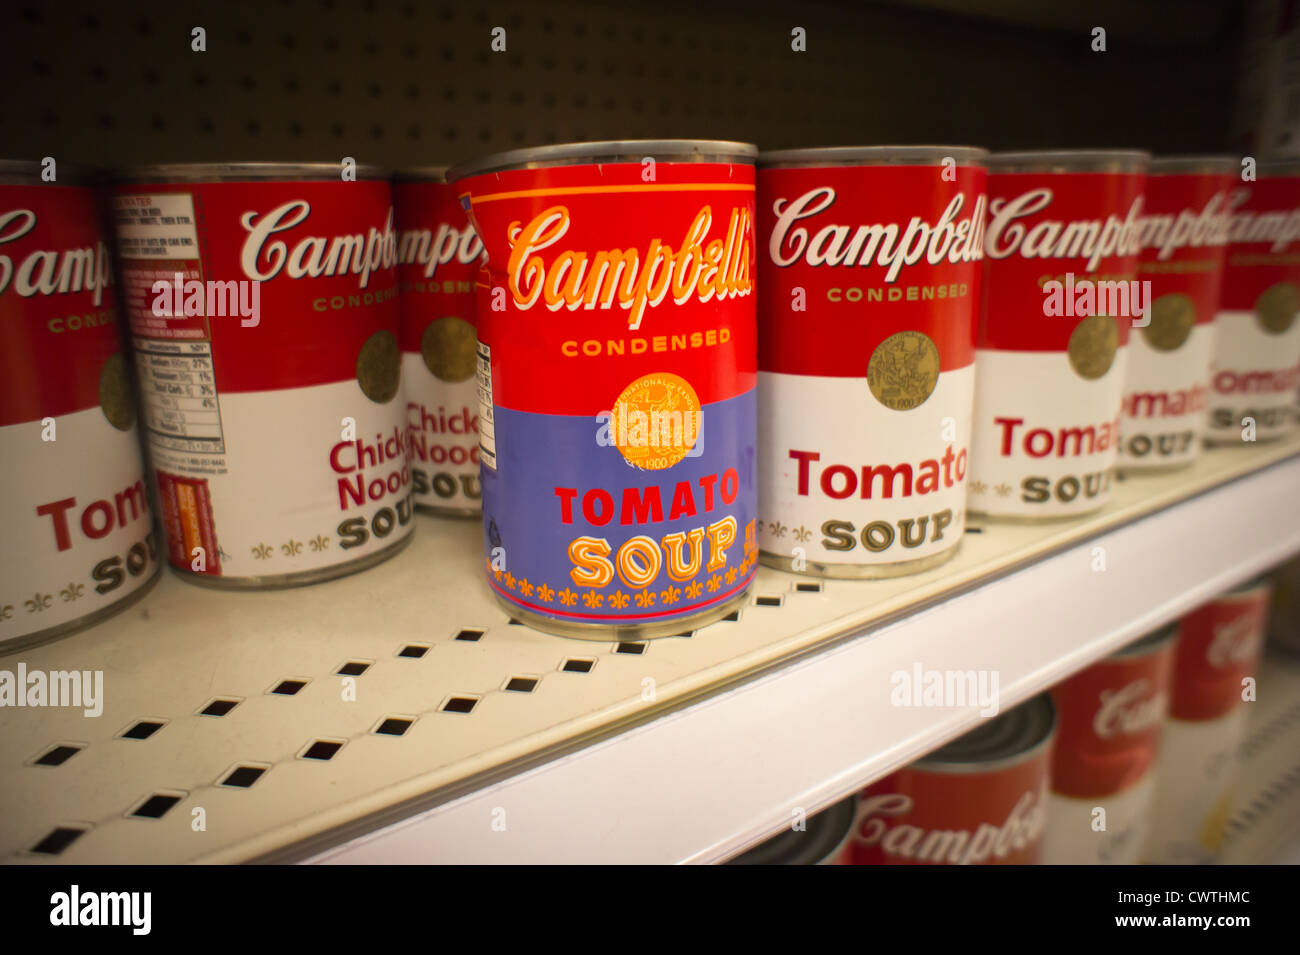 Andy Warhol Limited Edition kann der Campbells Tomatensuppe ist in ein Ziel Kaufhaus Lebensmittelgeschäft in New York gesehen. Stockfoto